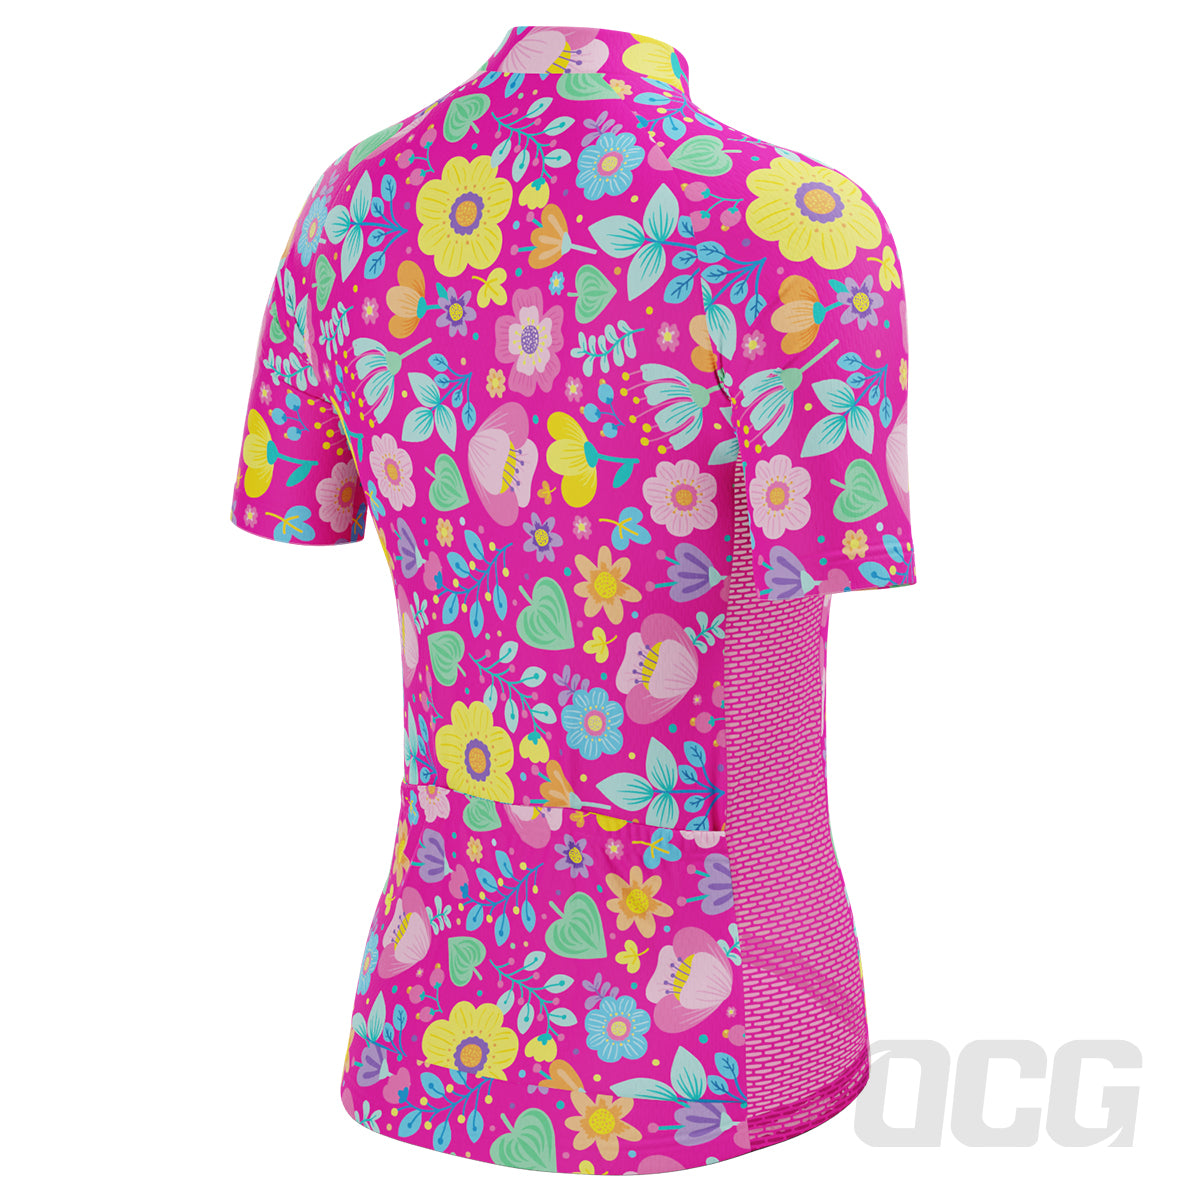 Vixen Women's Bouquet Floral Short Sleeve Cycling Jersey